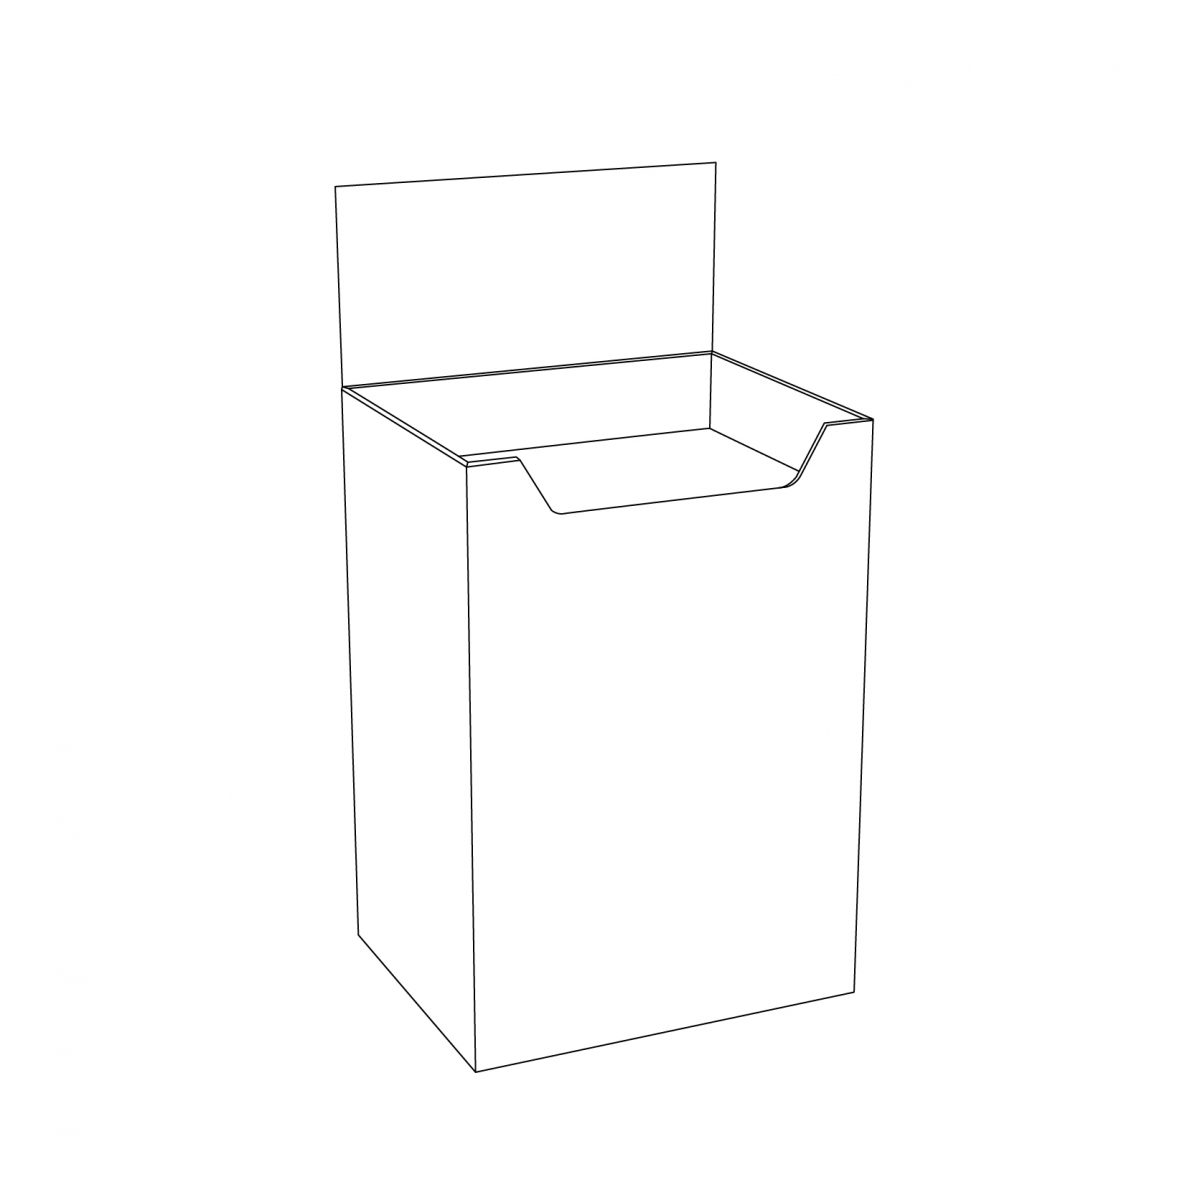 Présentoir de plancher en carton, dump bin (benne), avec en-tête - tracé